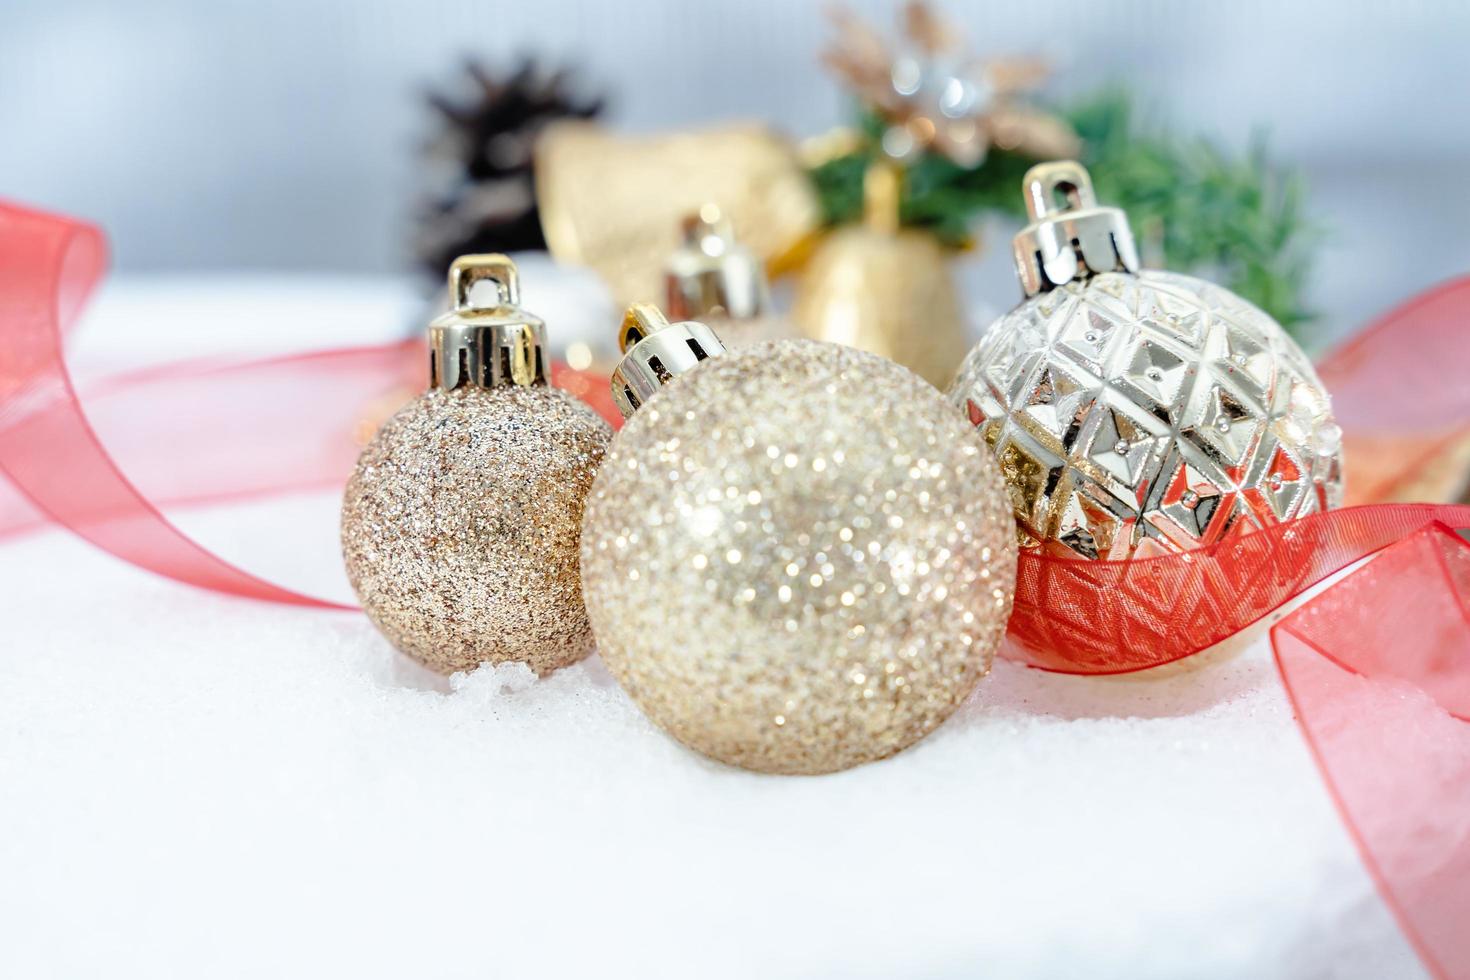 jul av vinter- - jul bollar med band på snö, vinter- högtider begrepp. jul röd bollar, gyllene bollar, tall och snöflingor dekorationer i snö bakgrund foto